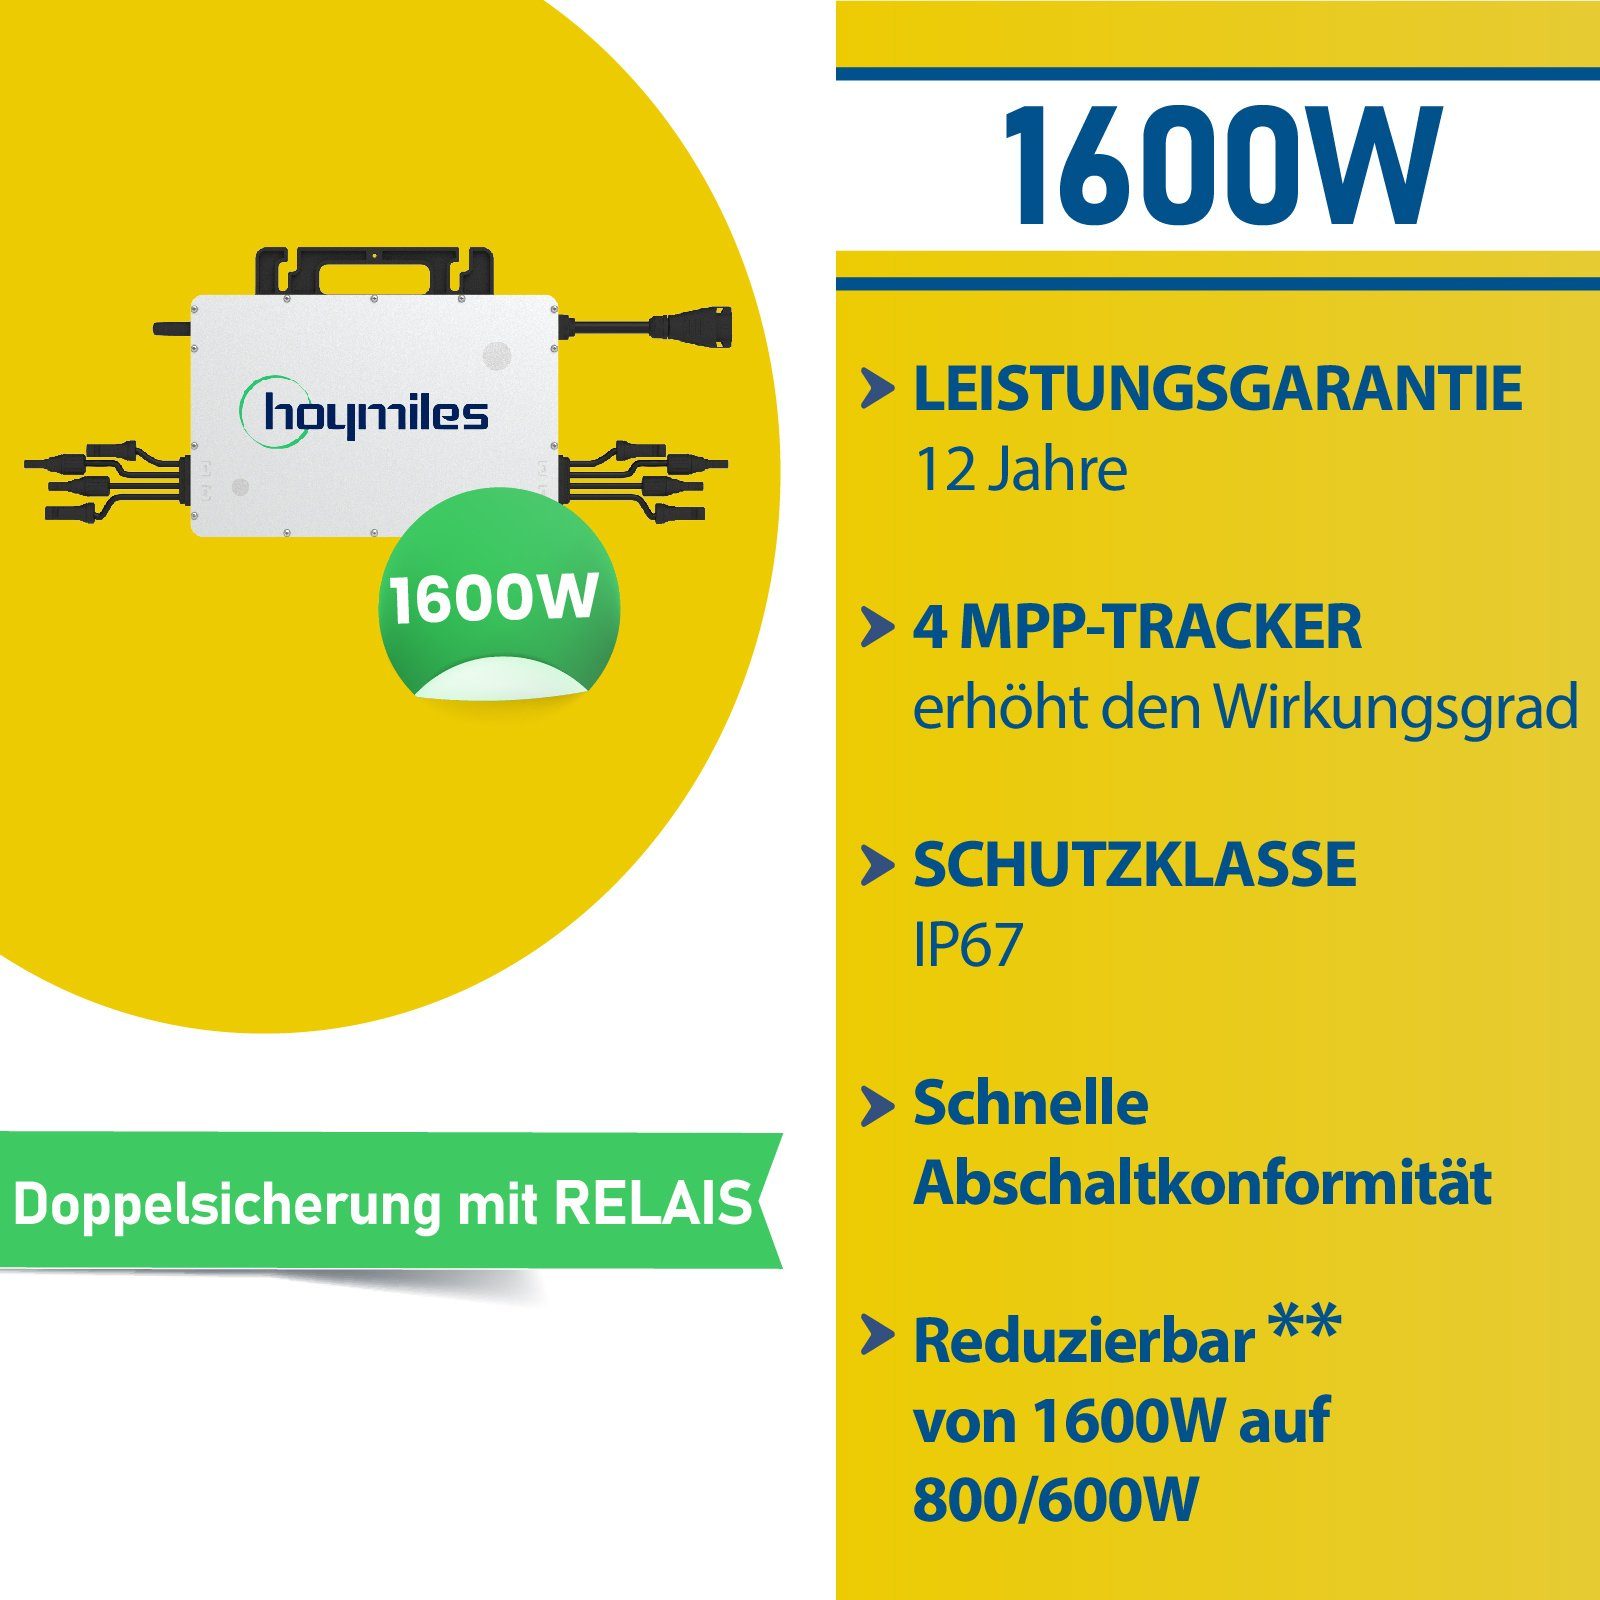 Wechselrichter, Ziegeldach, Hoymiles (4x 1600W Stegpearl 400W) Balkonkraftwerk DTU-WLite-S PV-Montage Photovoltaik HMS-1600-4T Solaranlage